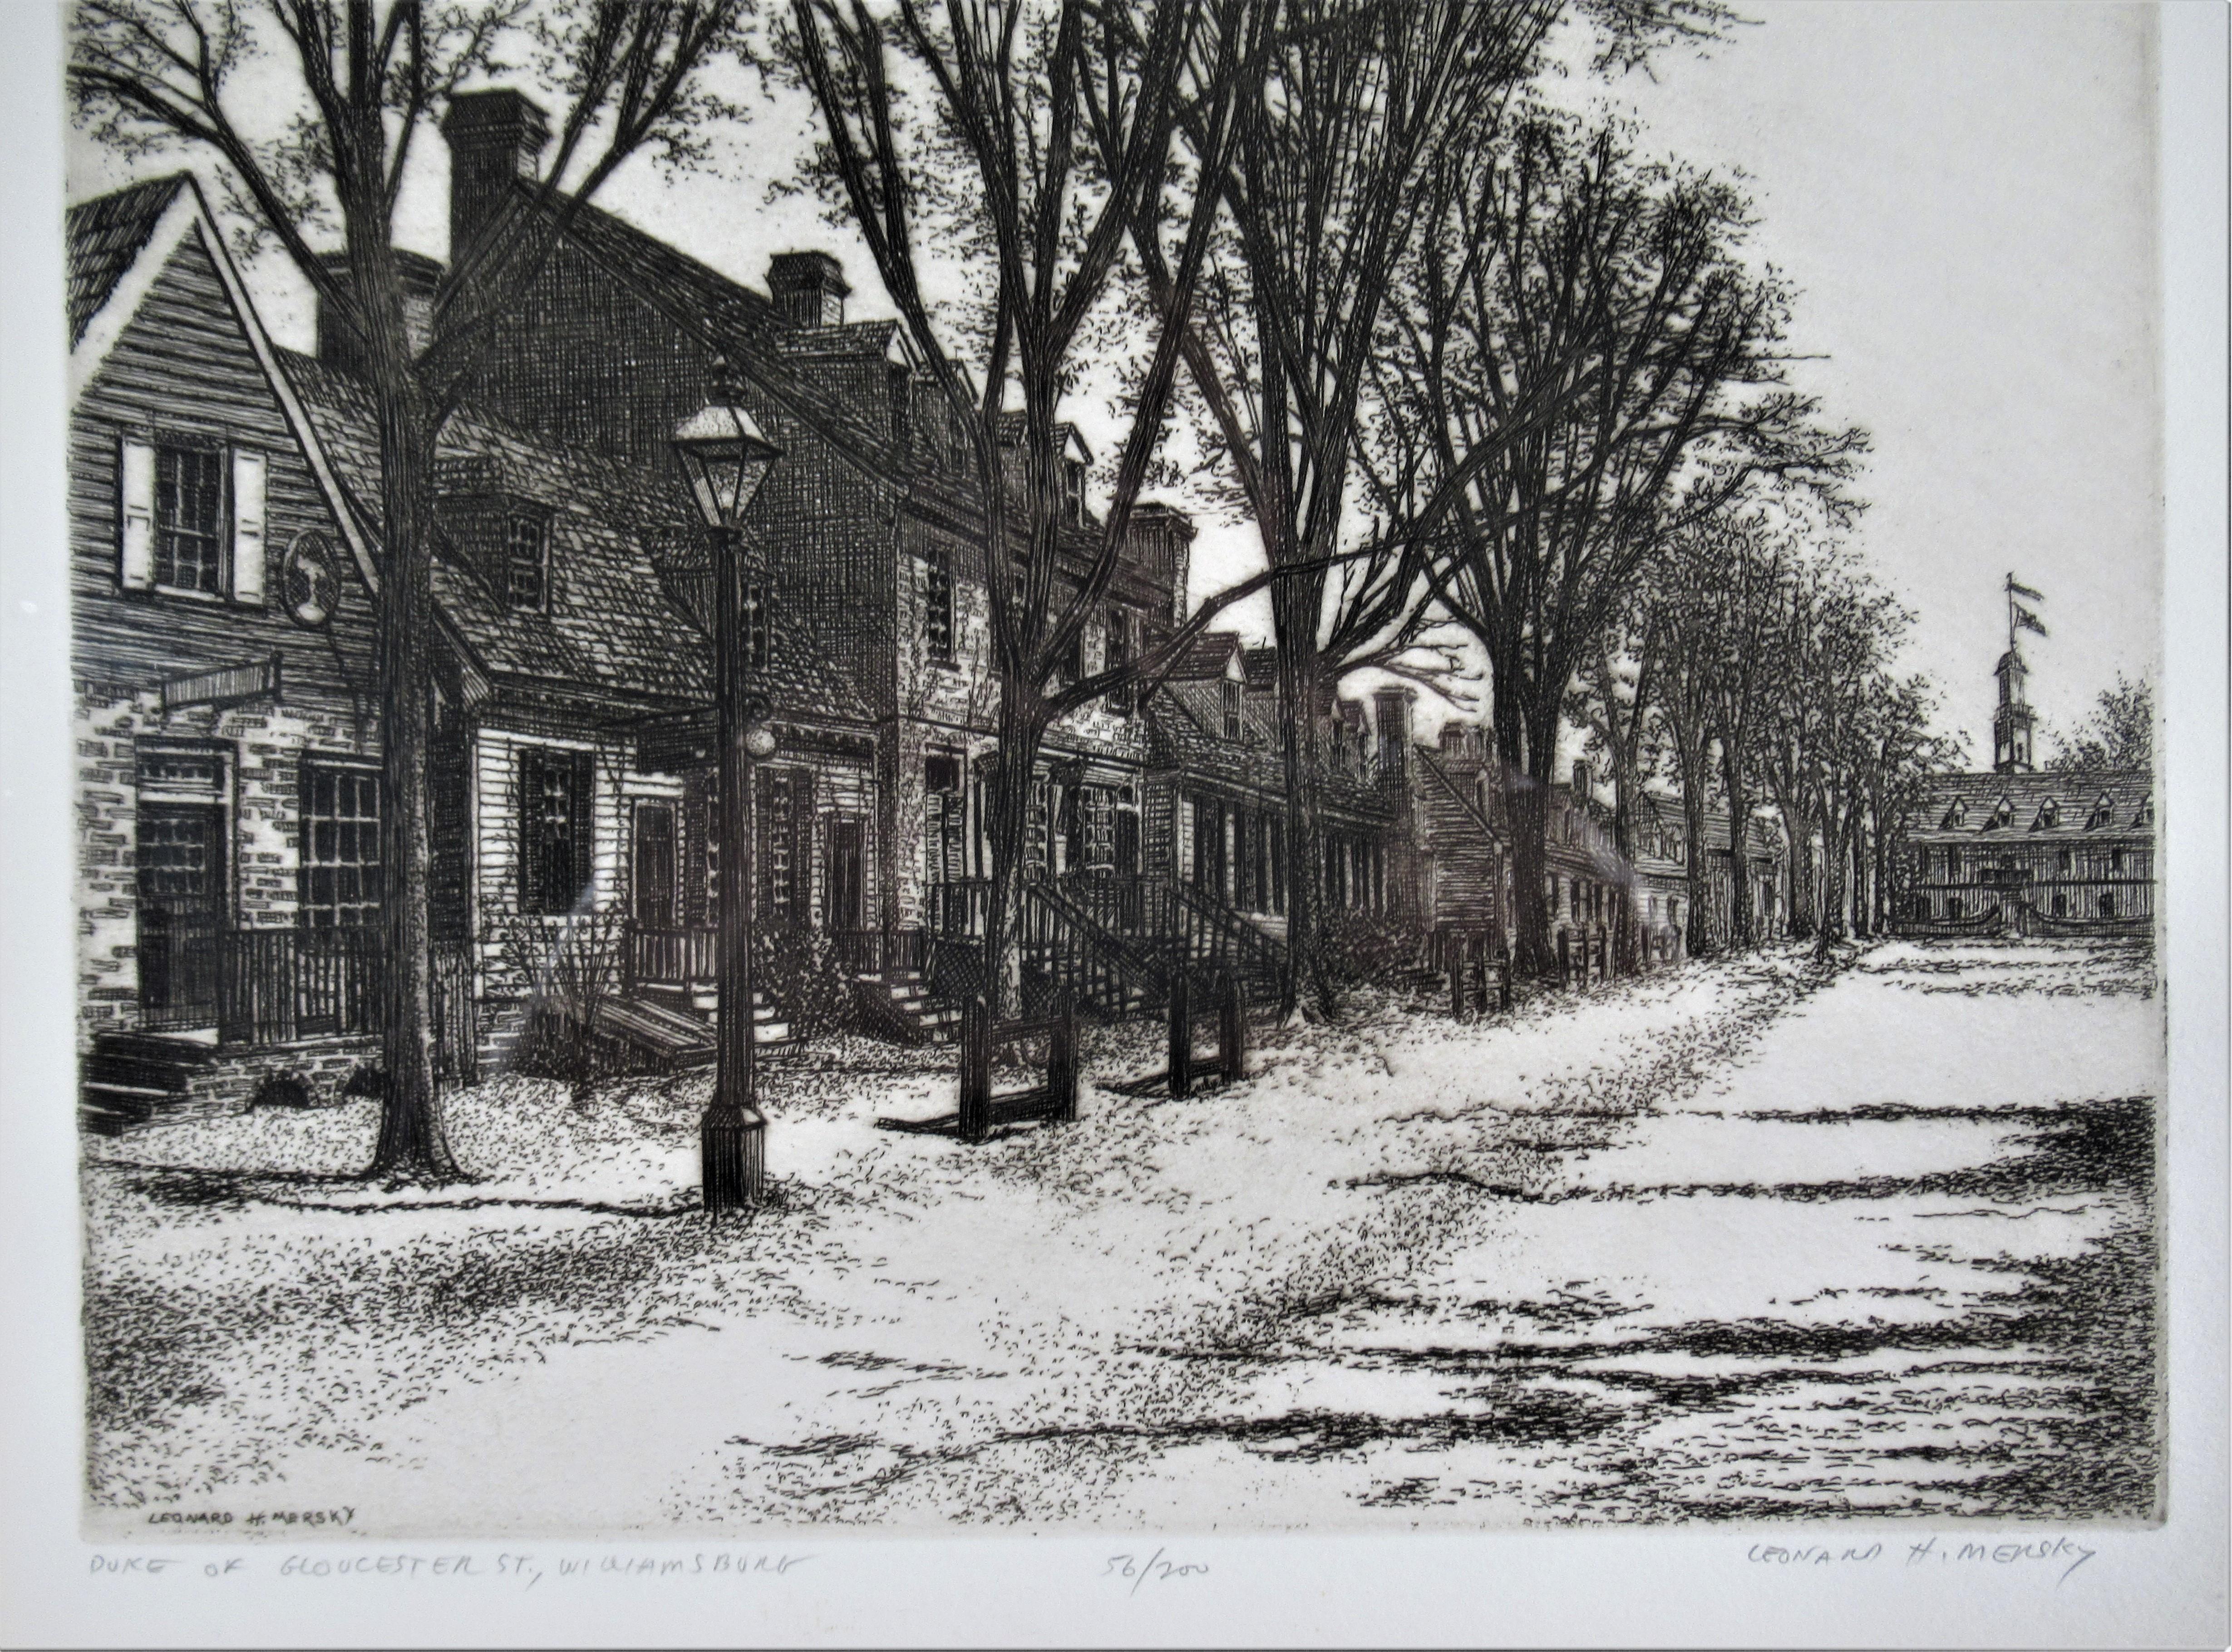 Duke of Gloucester Street, Willamsburg – Print von Leonard H. Mersky